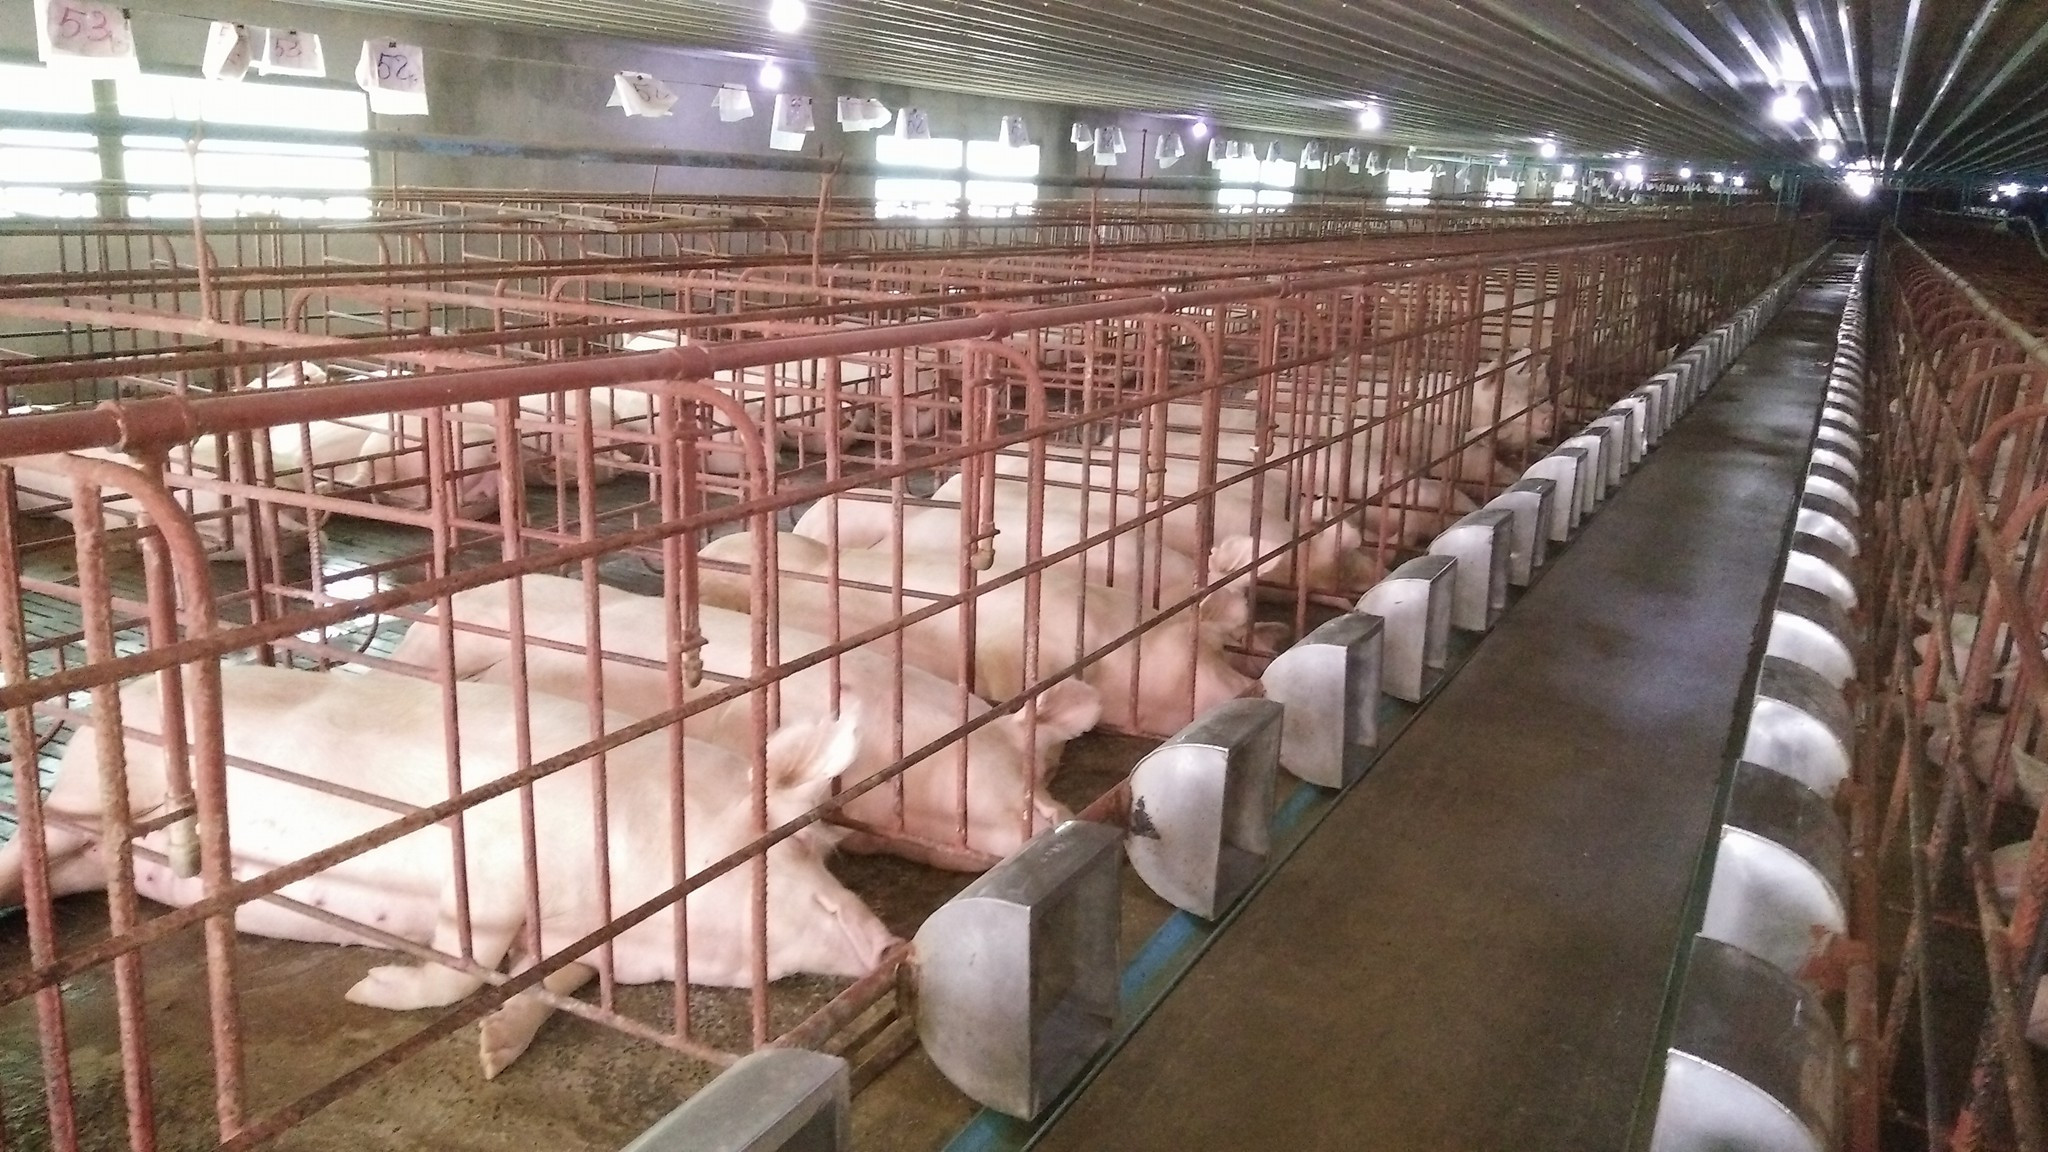 Hiện ở Thanh Chương có đàn lợn thịt khoảng 53.000 con, trong đó có nhiều trang trại sắp sửa xuất chuồng nên nguồn cung khá ổn định. Ảnh: Thanh Phúc